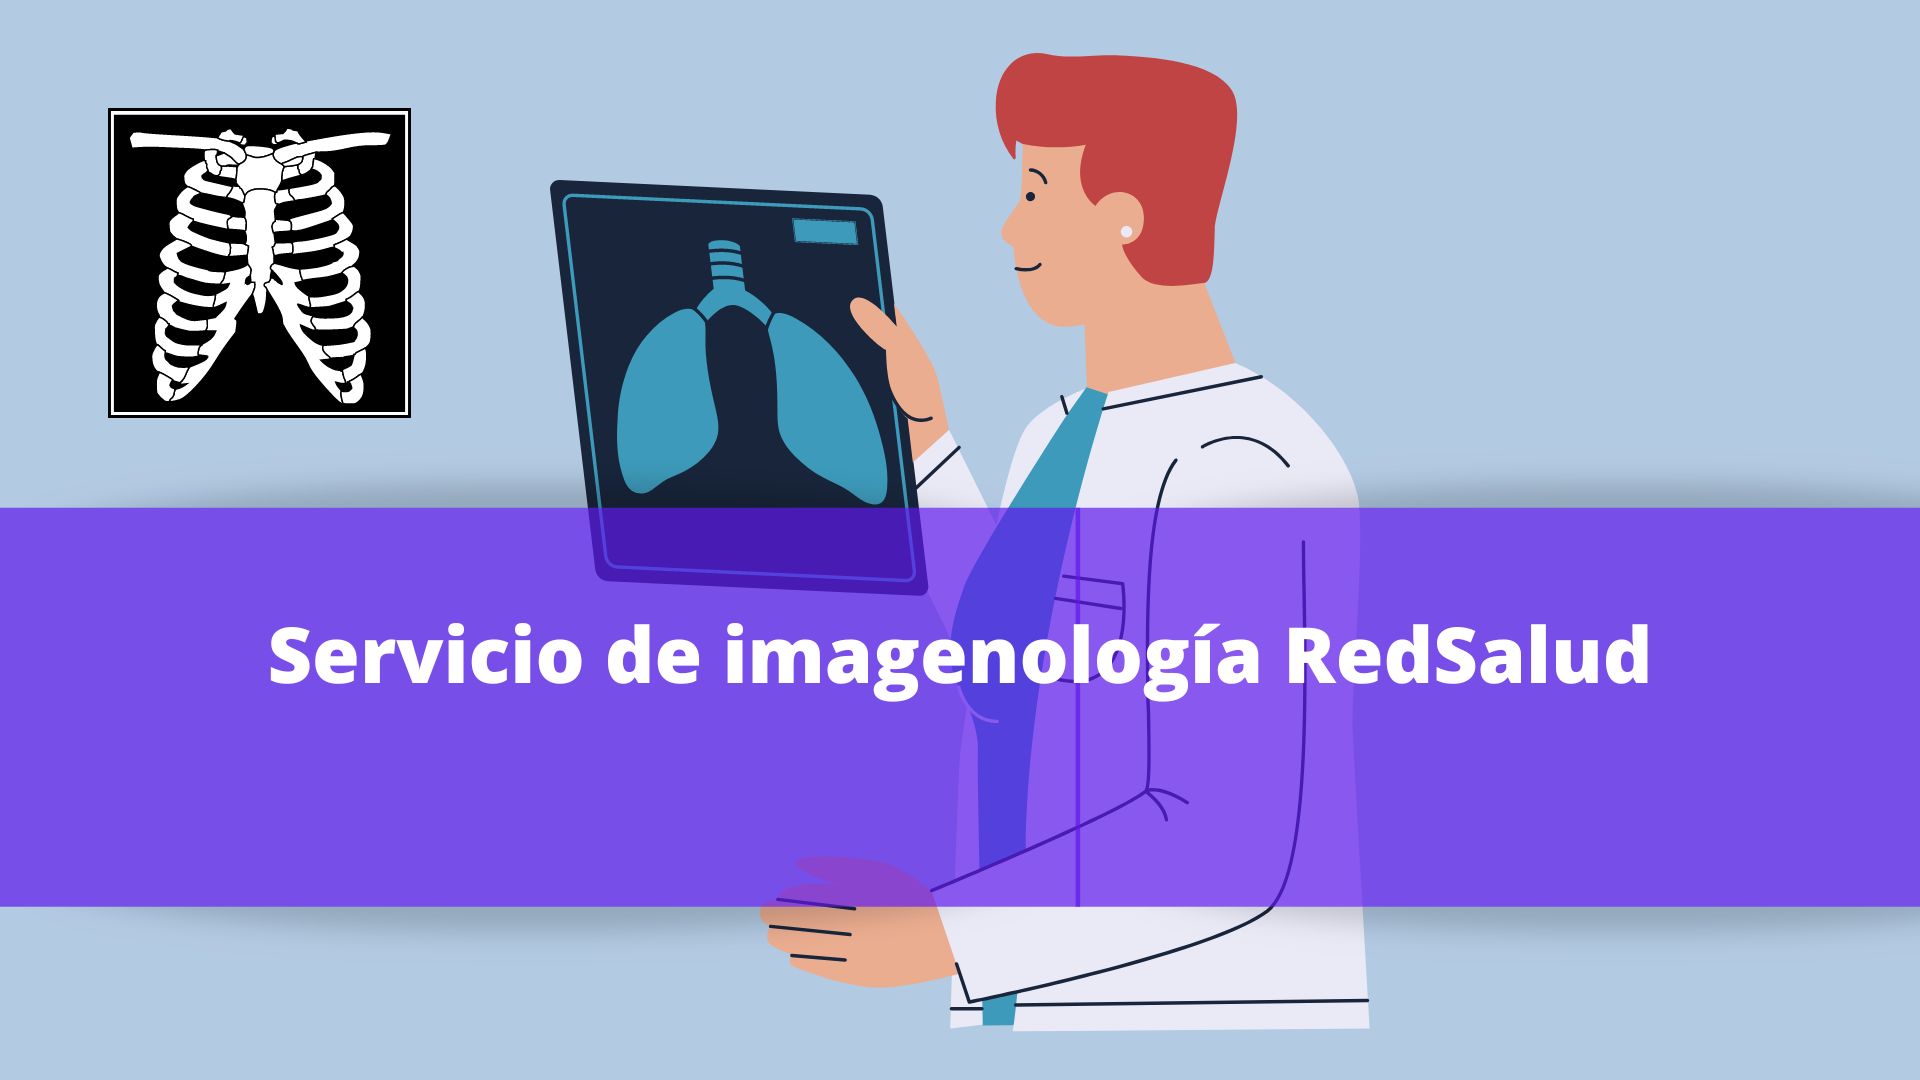 Servicio de imagenología RedSalud